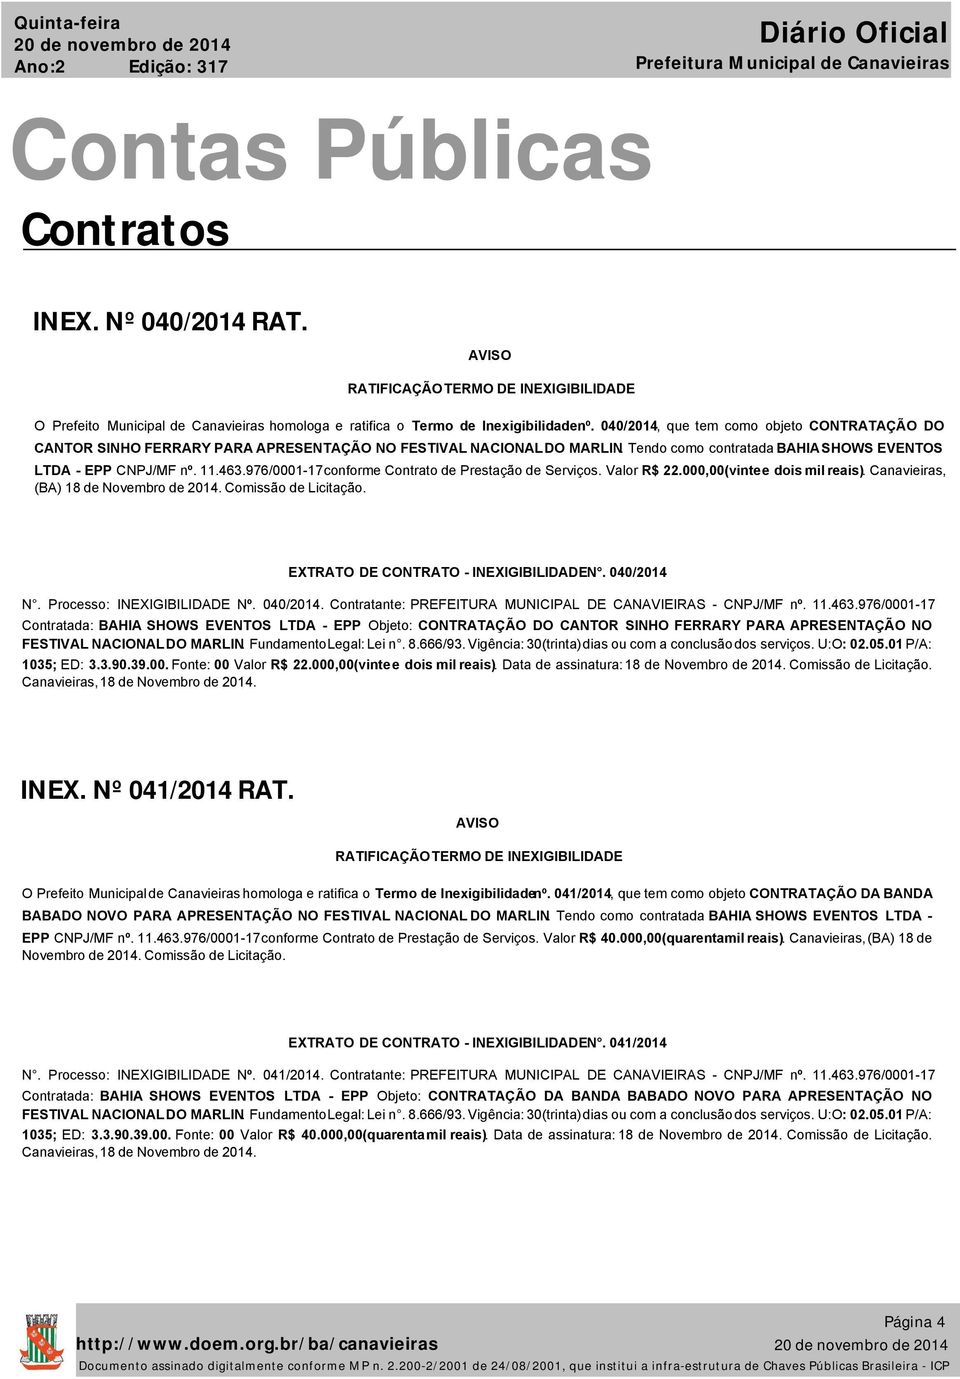 976/0001-17conforme Contrato de Prestação de Serviços. Valor R$ 22.000,00(vintee dois mil reais). Canavieiras, (BA) 18 de Novembro de 2014. Comissão de Licitação.